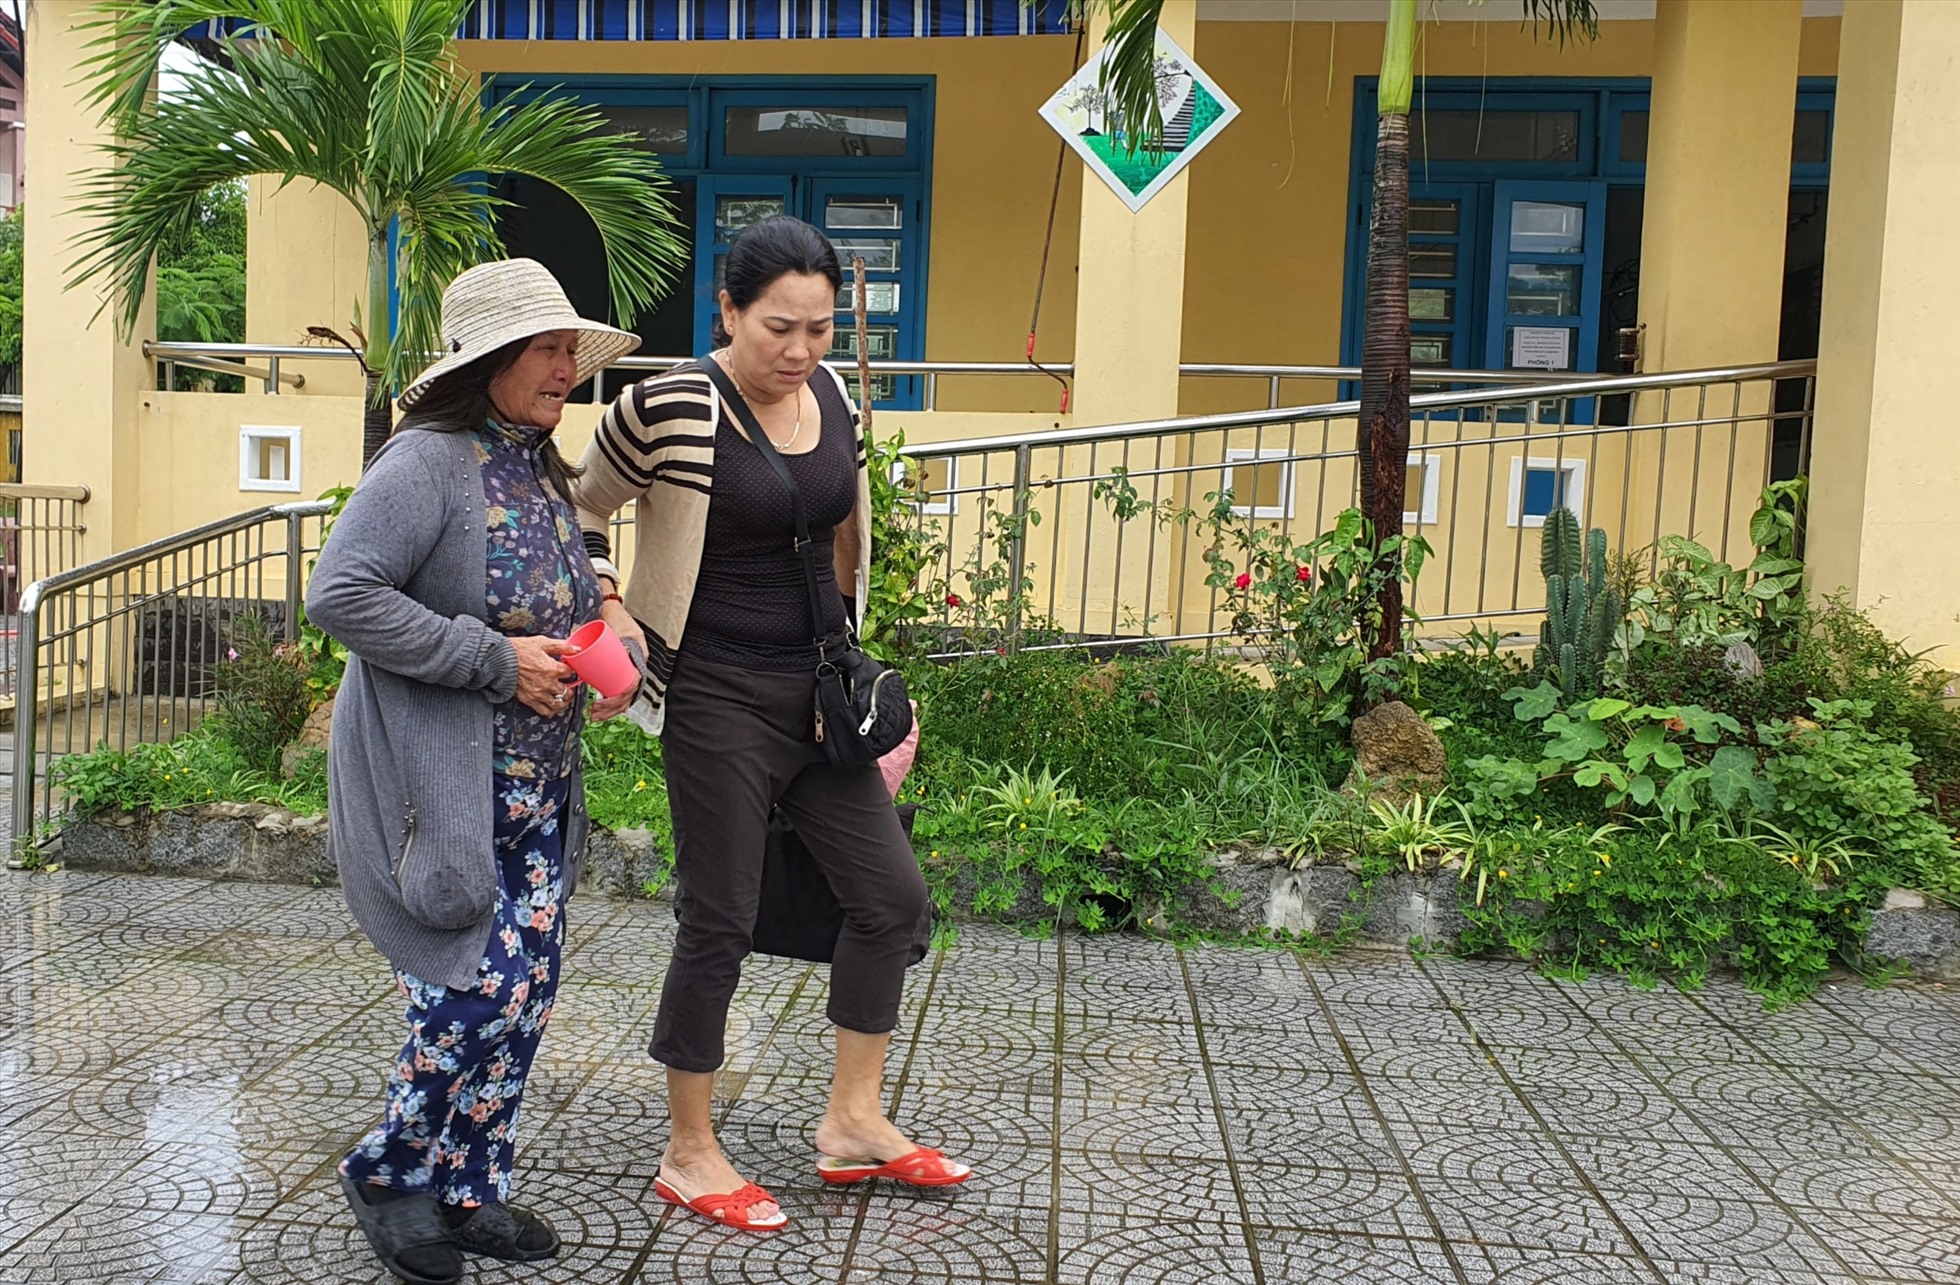 Bà Lê Thị Gạt (68 tuổi, trú tổ dân phố Hải Bình, phường Thuận An, TP. Huế) cho biết, nghe bão Noru rất mạnh nên từ sớm bà đã chủ động dọn dẹp nhà cửa và đến Trường THCS Thuận An (là địa điểm cho người dân tránh trú bão) để đảm bảo an toàn.